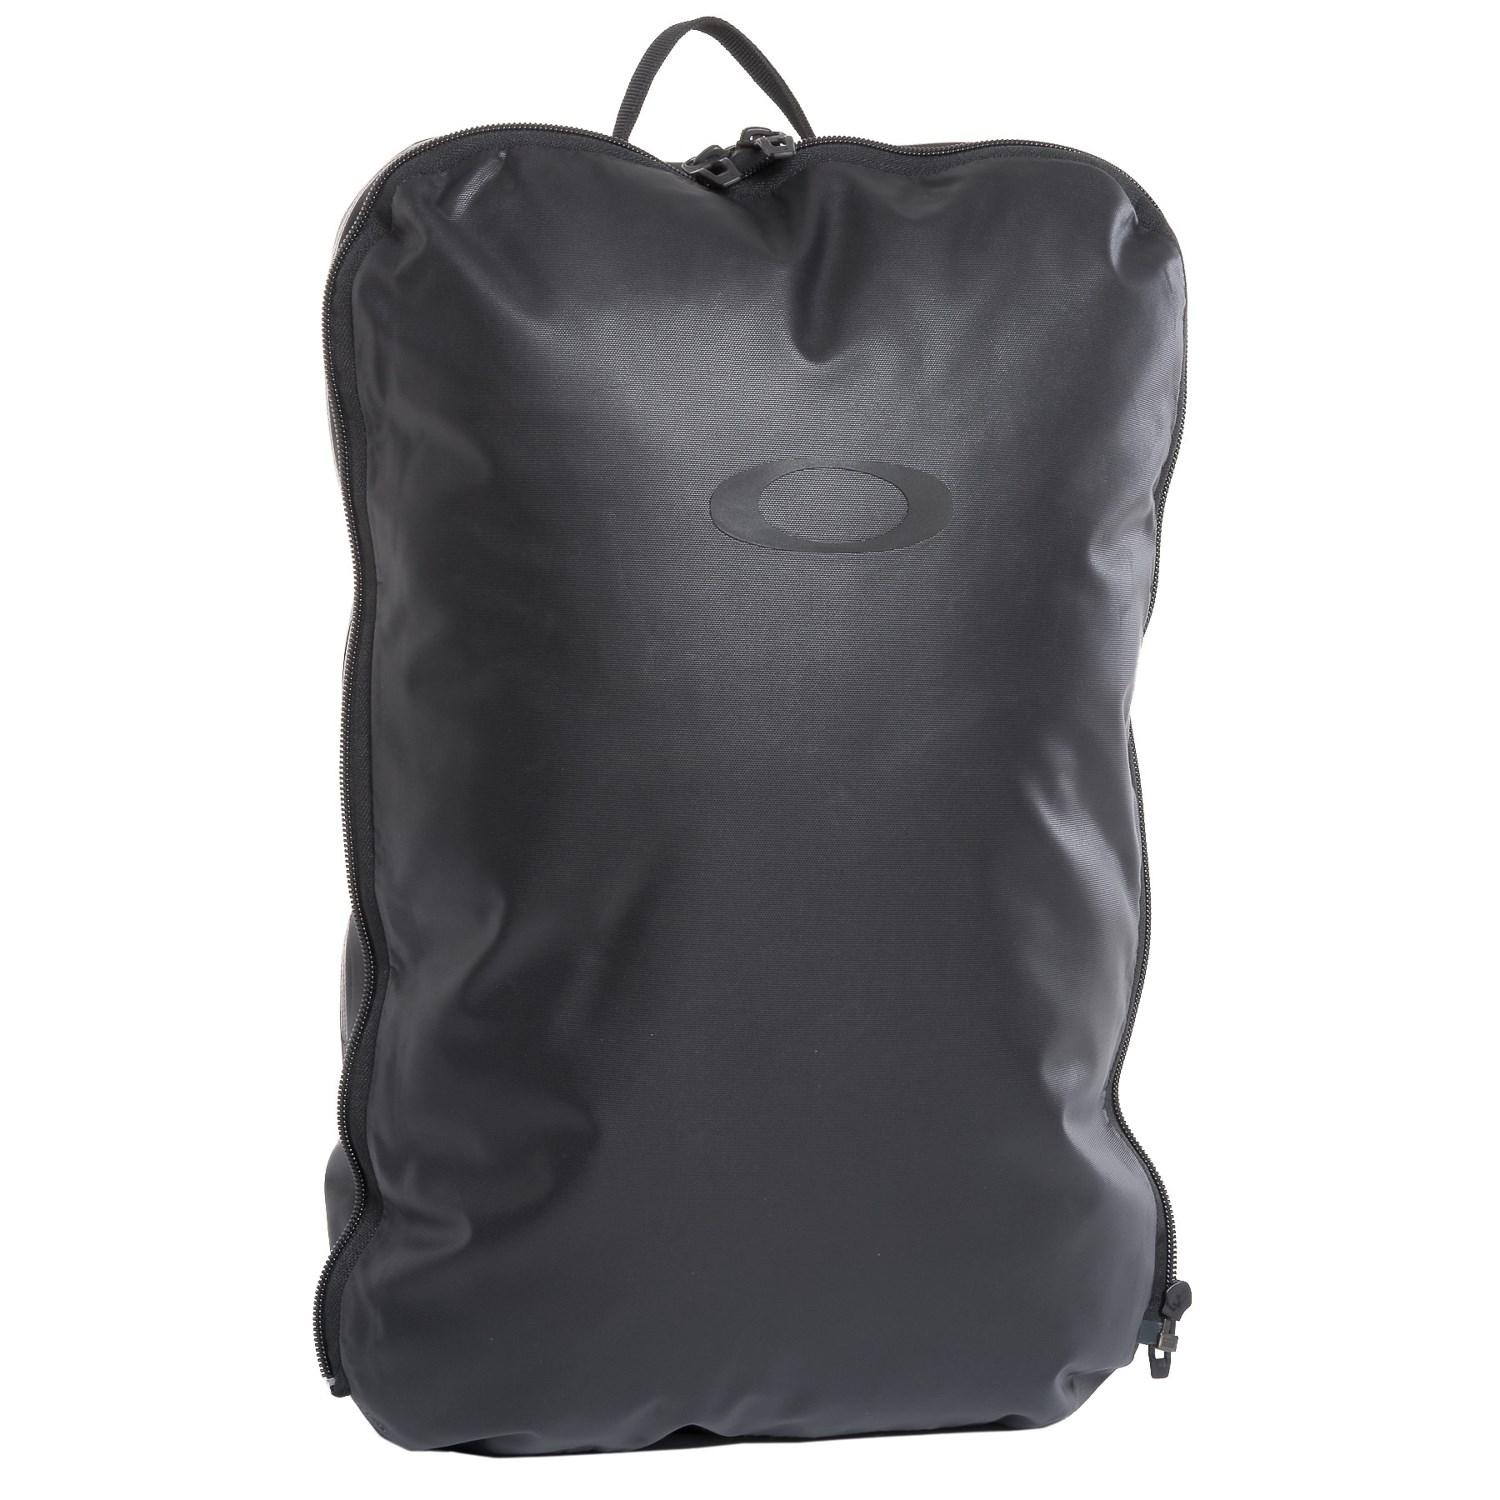 Oakley Twoface 8l Laptop Backpack in 